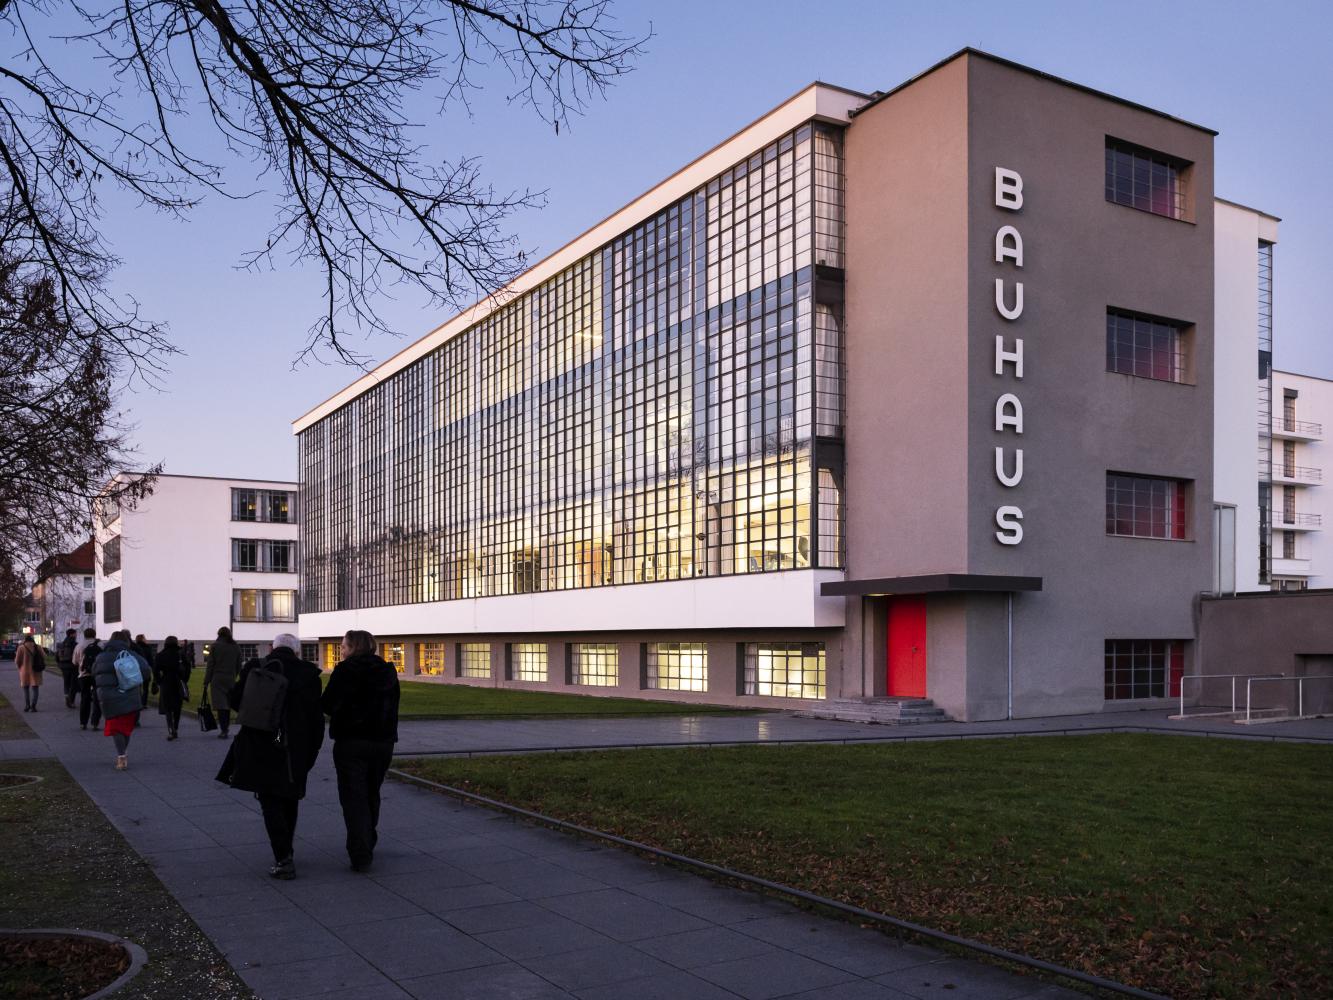 Bauhausgebäude (1925-26), Architekt: Walter Gropius